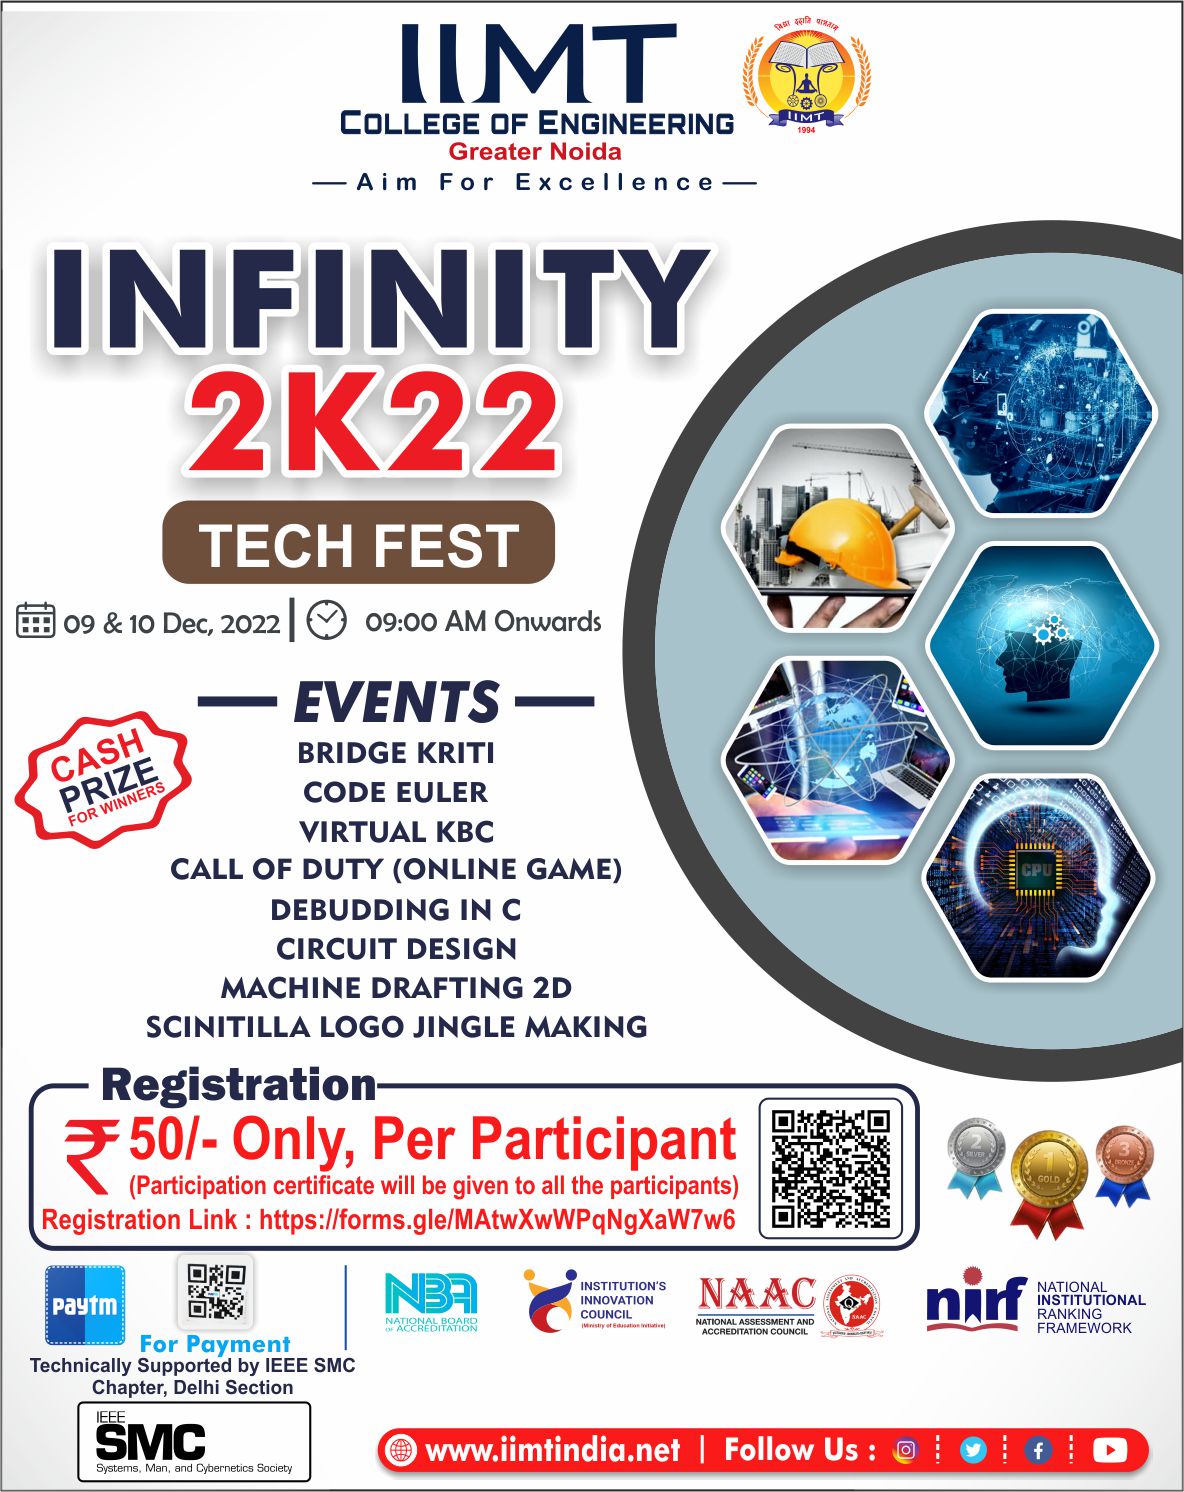 Infinity 2K22 Tech Fest